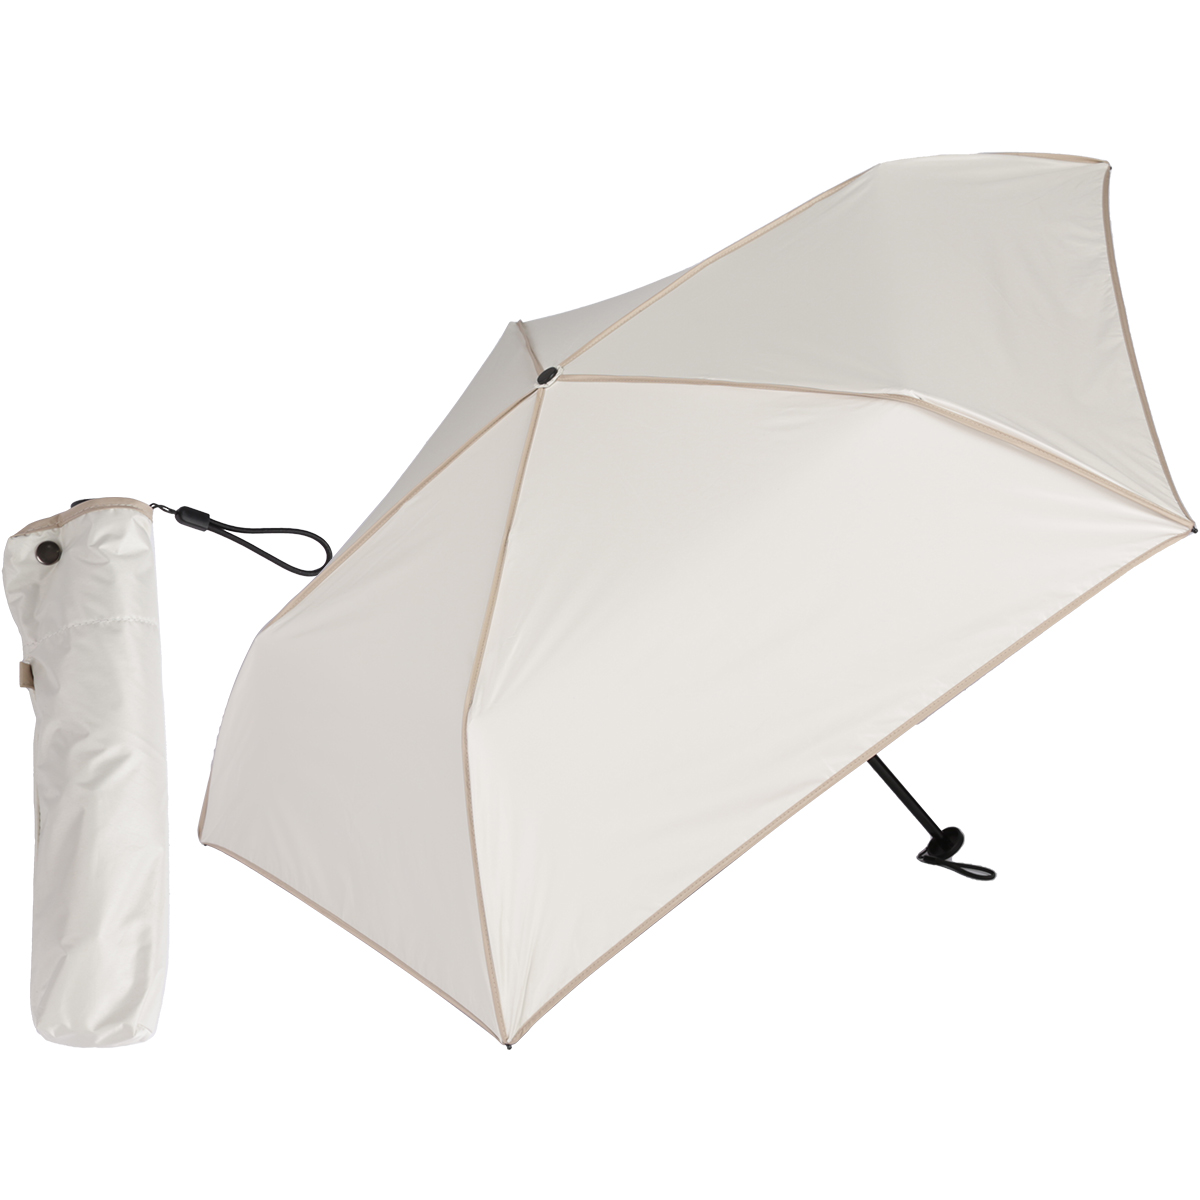 日傘 完全遮光 折りたたみ 超軽量カーボン傘 120g 折り畳み傘 UVカット100% 熱中症対策 遮光率100% 遮熱 コンパクト おしゃれ  プレゼント